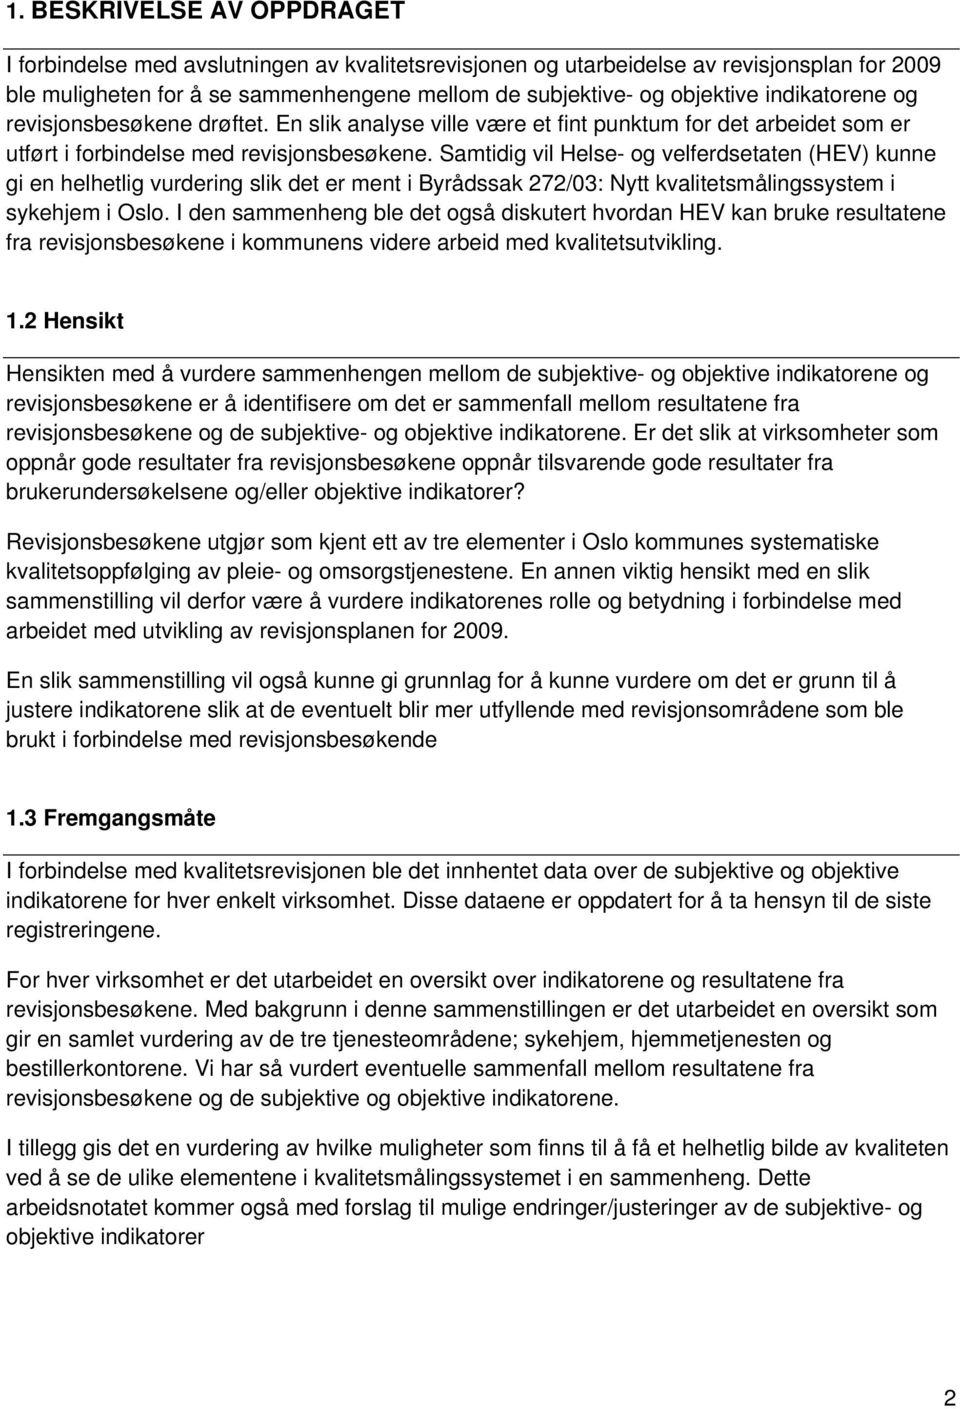 Samtidig vil Helse- og velferdsetaten (HEV) kunne gi en helhetlig vurdering slik det er ment i Byrådssak 272/03: Nytt kvalitetsmålingssystem i sykehjem i Oslo.